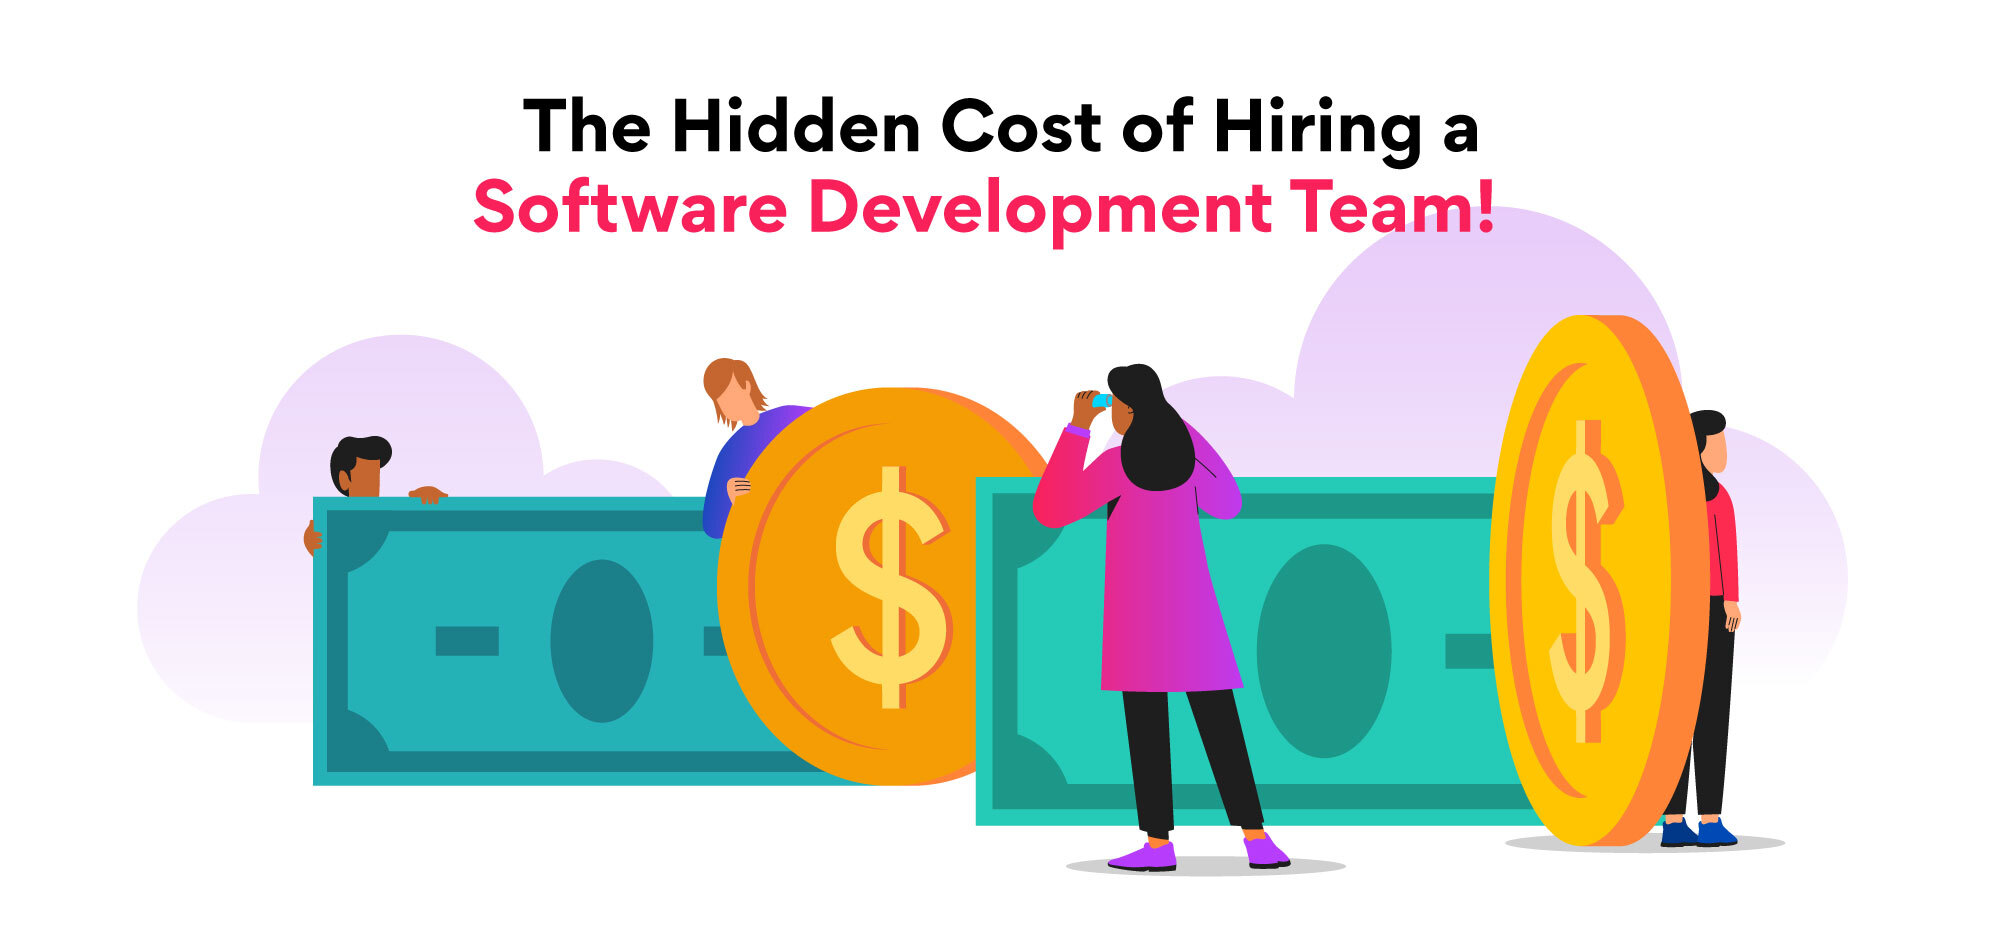 The Hidden Cost of Hiring A Software Development Team 2023